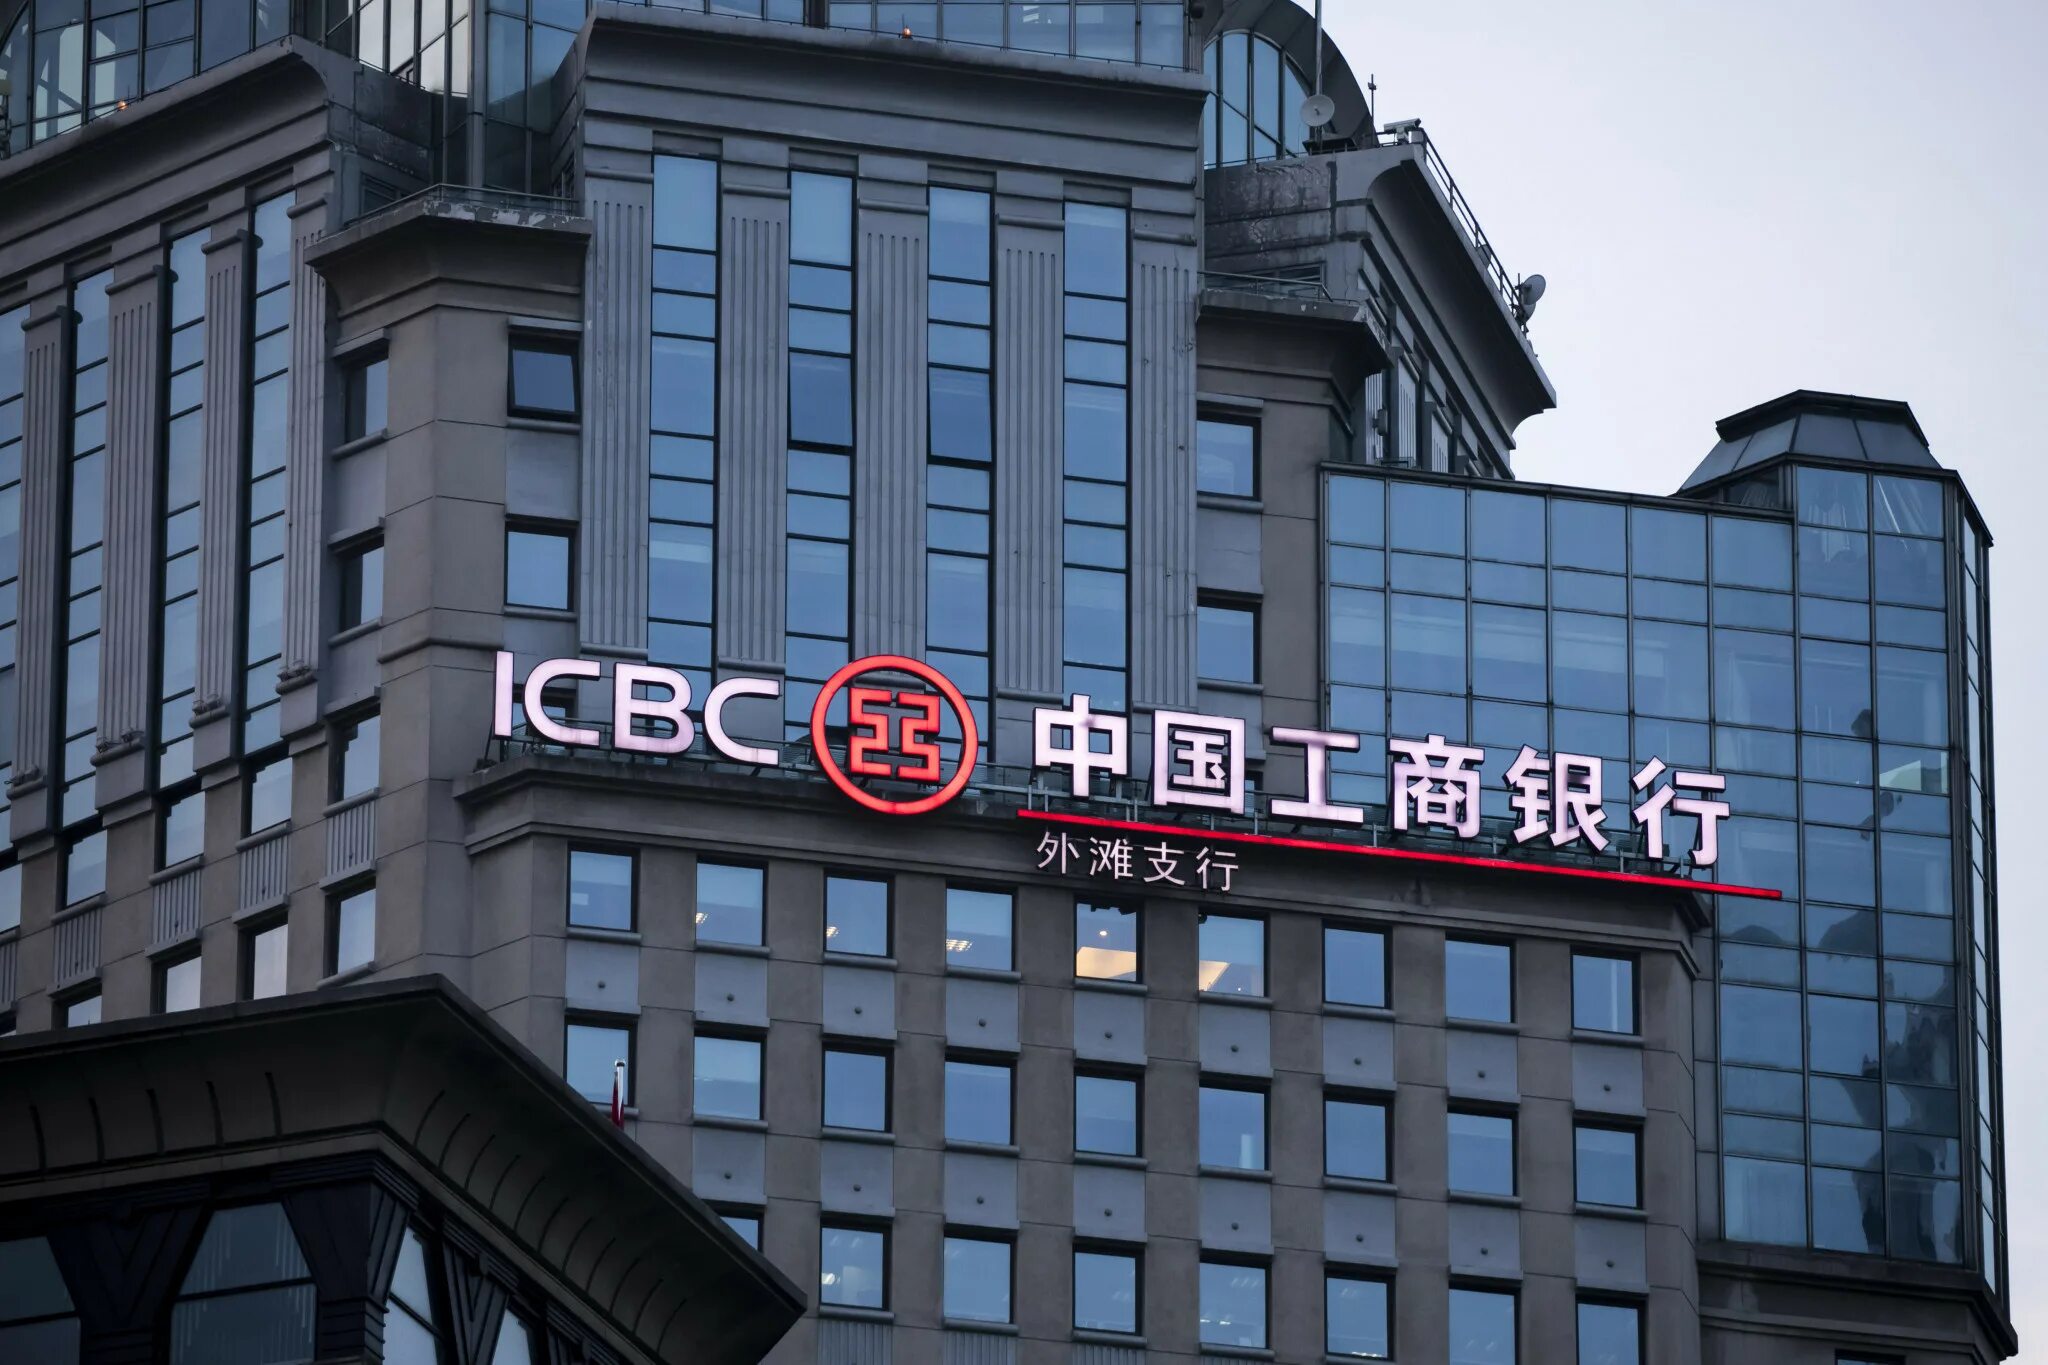 Suifenhe rural commercial bank. ICBC банк Китая. Индустриальный и коммерческий банк Китая. Industrial and commercial Bank of China (ICBC) банк. Банк Китая (Bank of China).